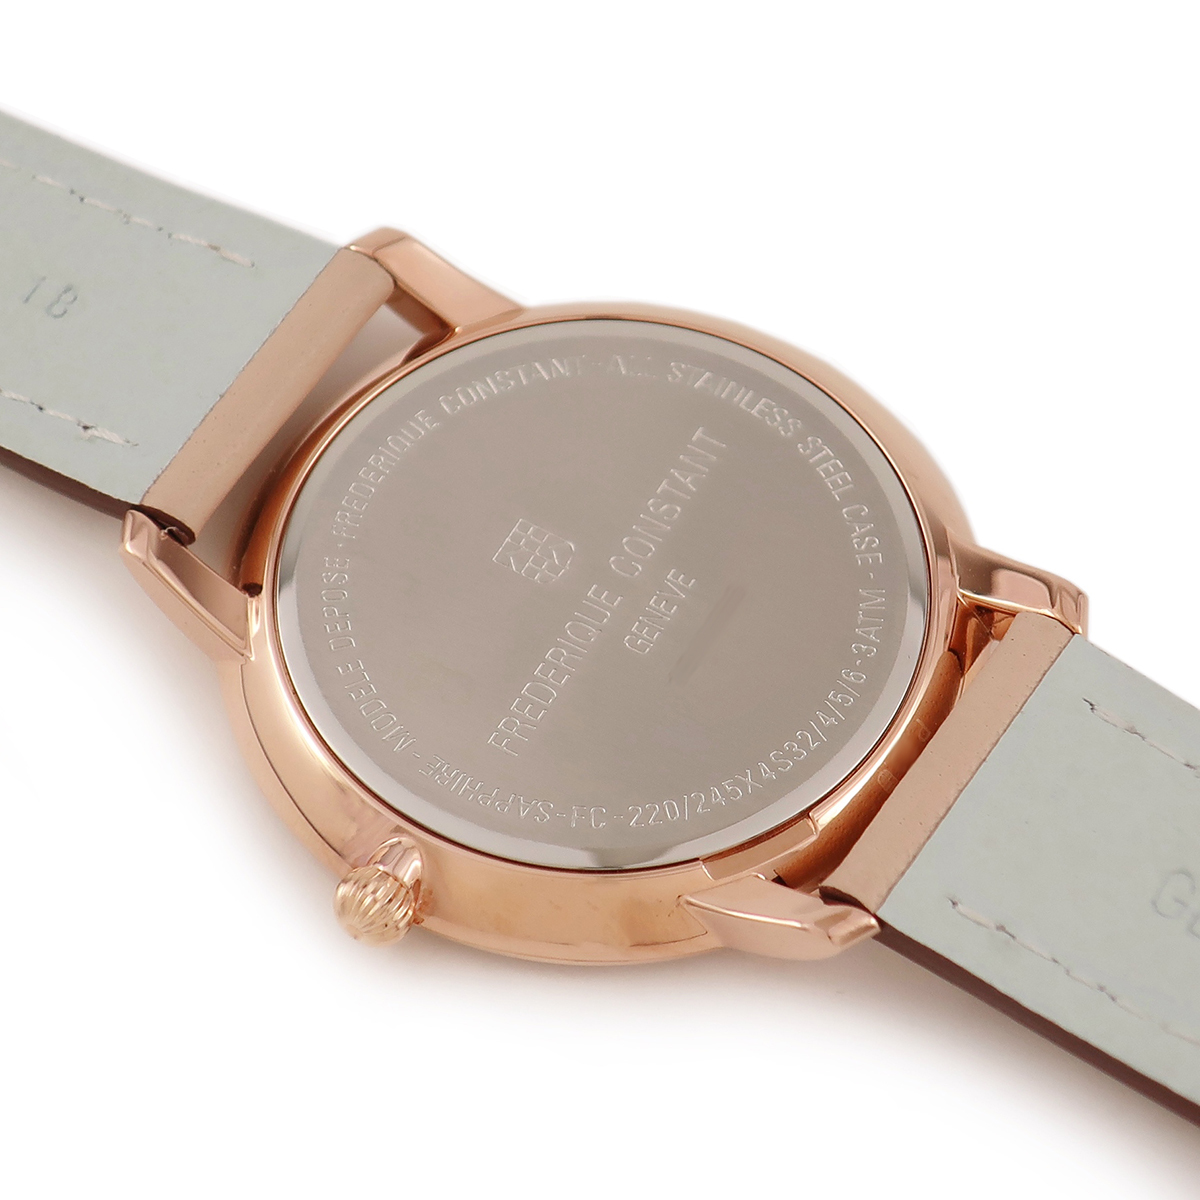 [3 год гарантия ] Frederick * константа тонкий линия FC-220MPW4SD34 PGP×SS оригинальный diamond ракушка кварц мужской женские наручные часы 